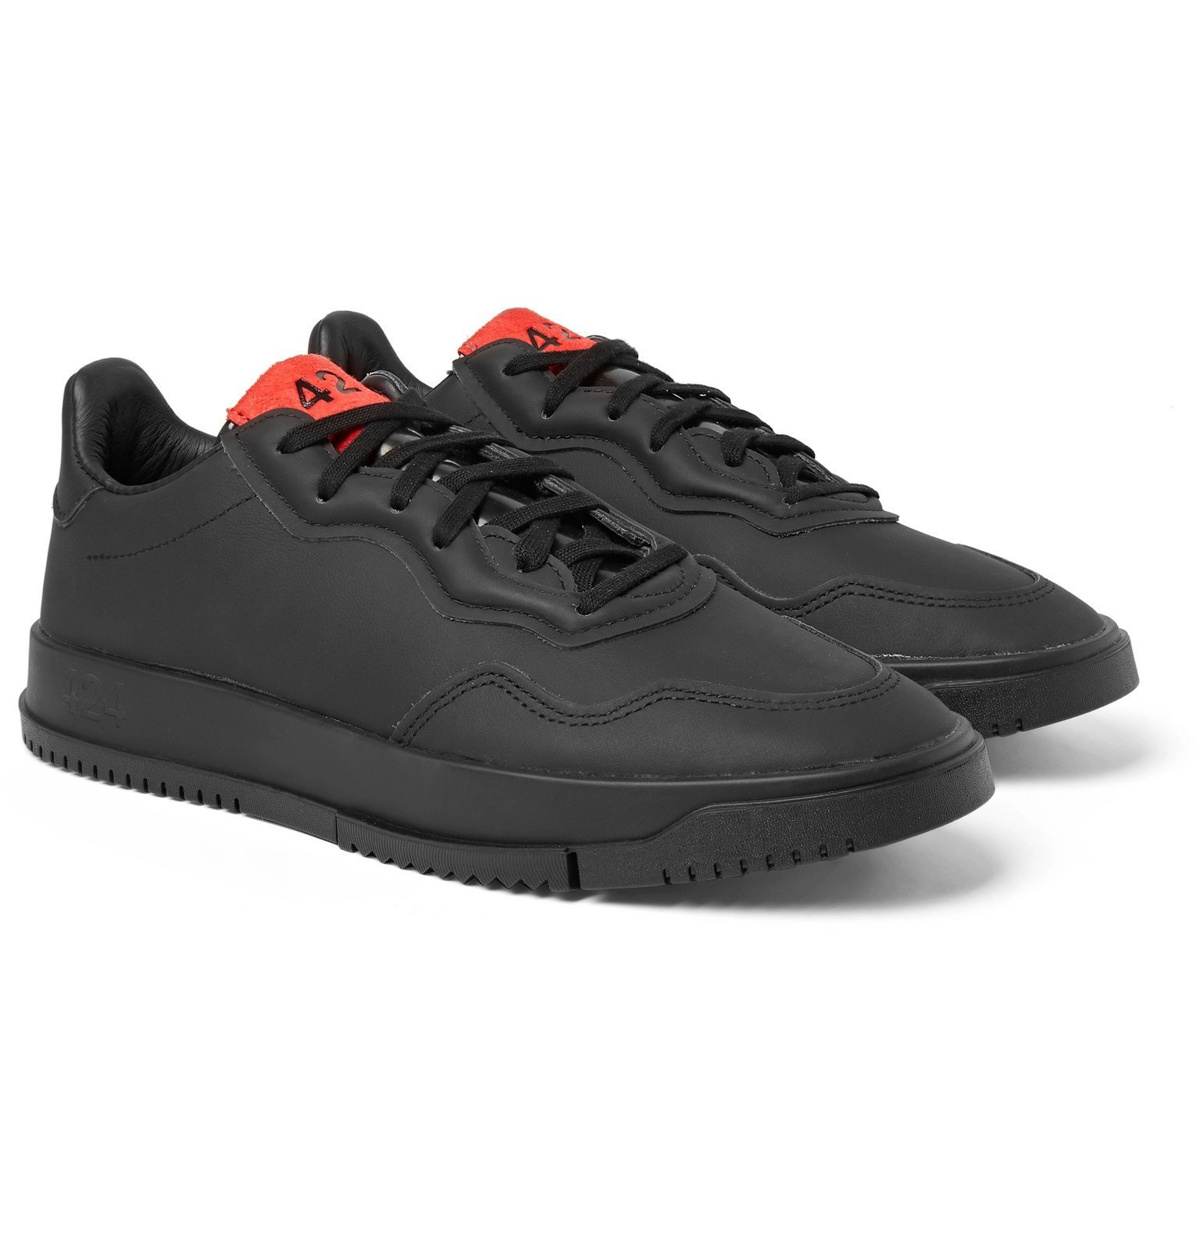 adidas - 424 SC Premiere Sneakers - Black adidas Consortium